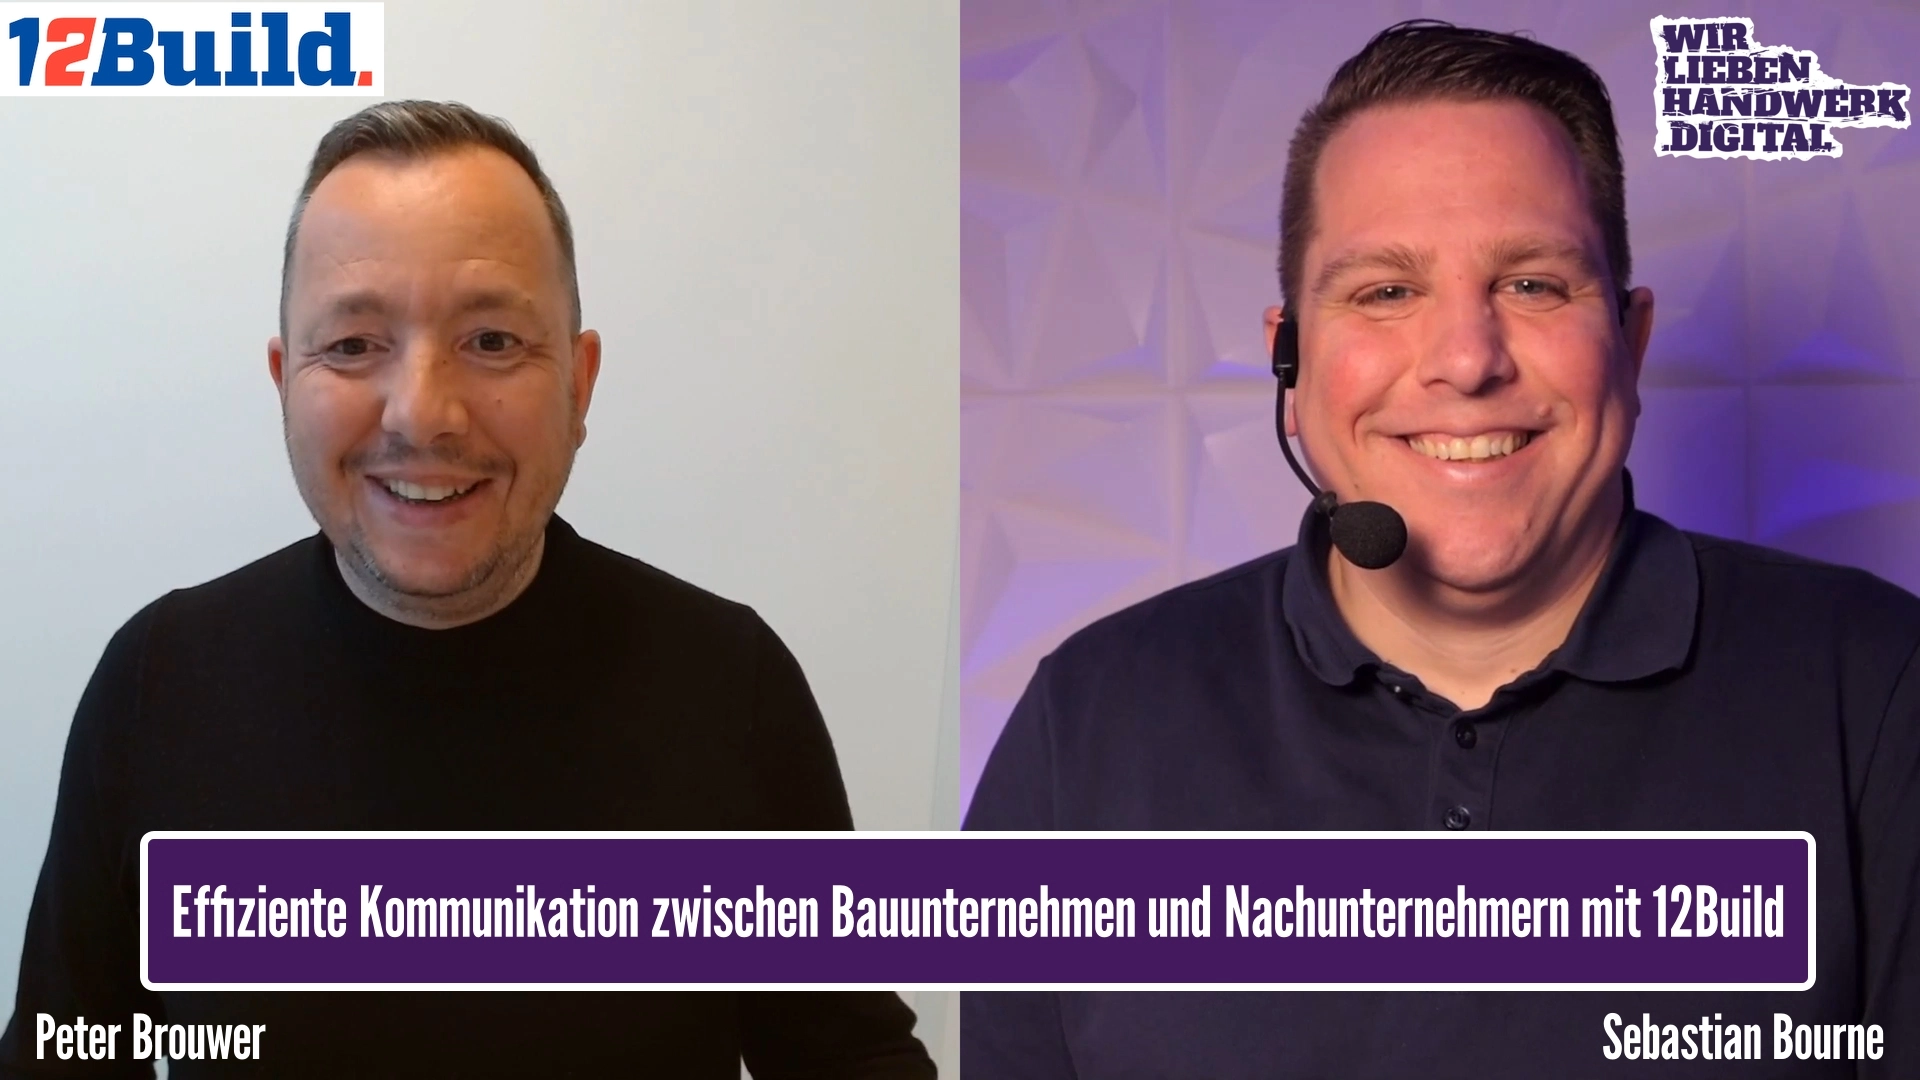 Effiziente Kommunikation zwischen Bauunternehmen und Nachunternehmern mit 12Build - Podcast Episode mit Peter Brouwer im WirliebenHandwerk.digital Podcast